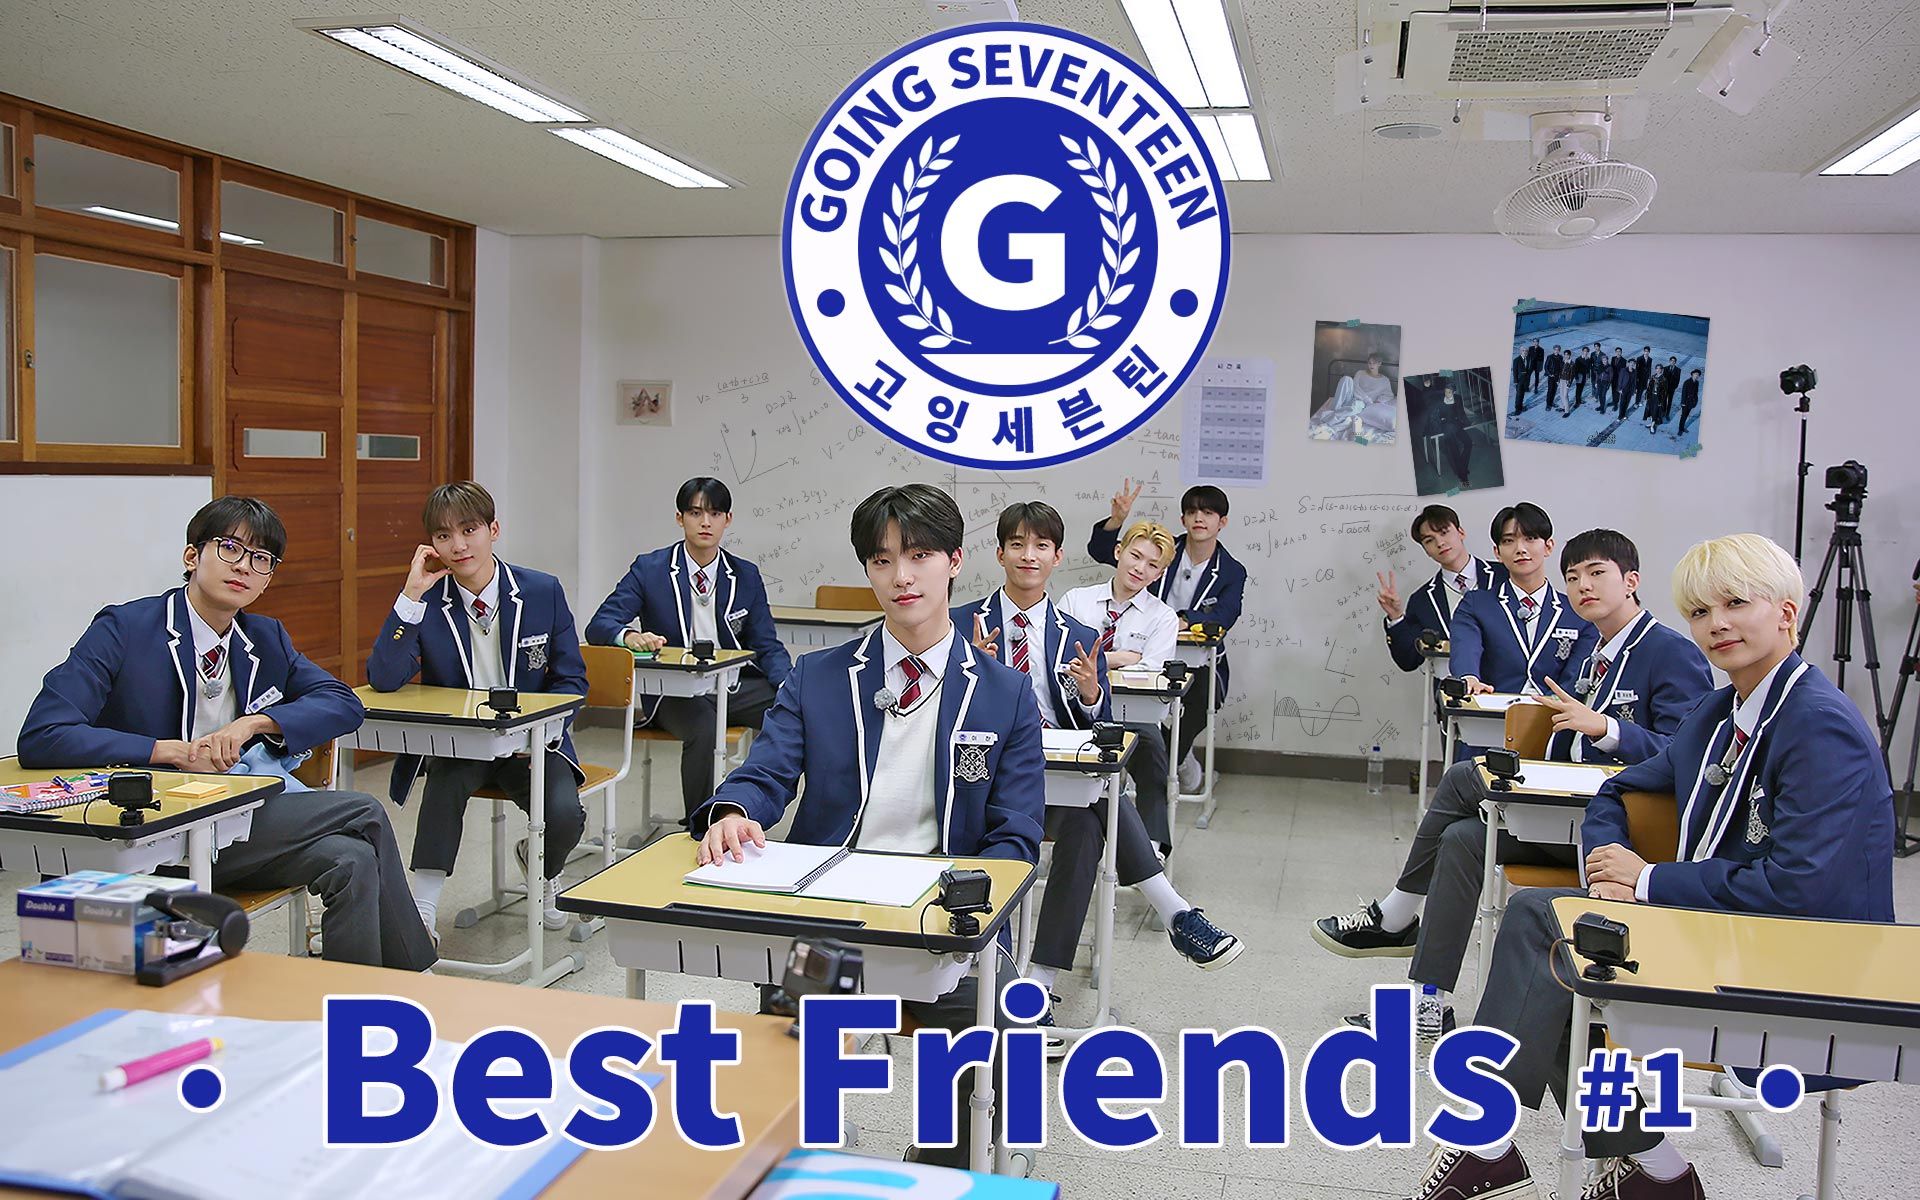 【SVT_ZER·0】EP.31 GOING SEVENTEEN 2021 Best Friends #1 零站中字